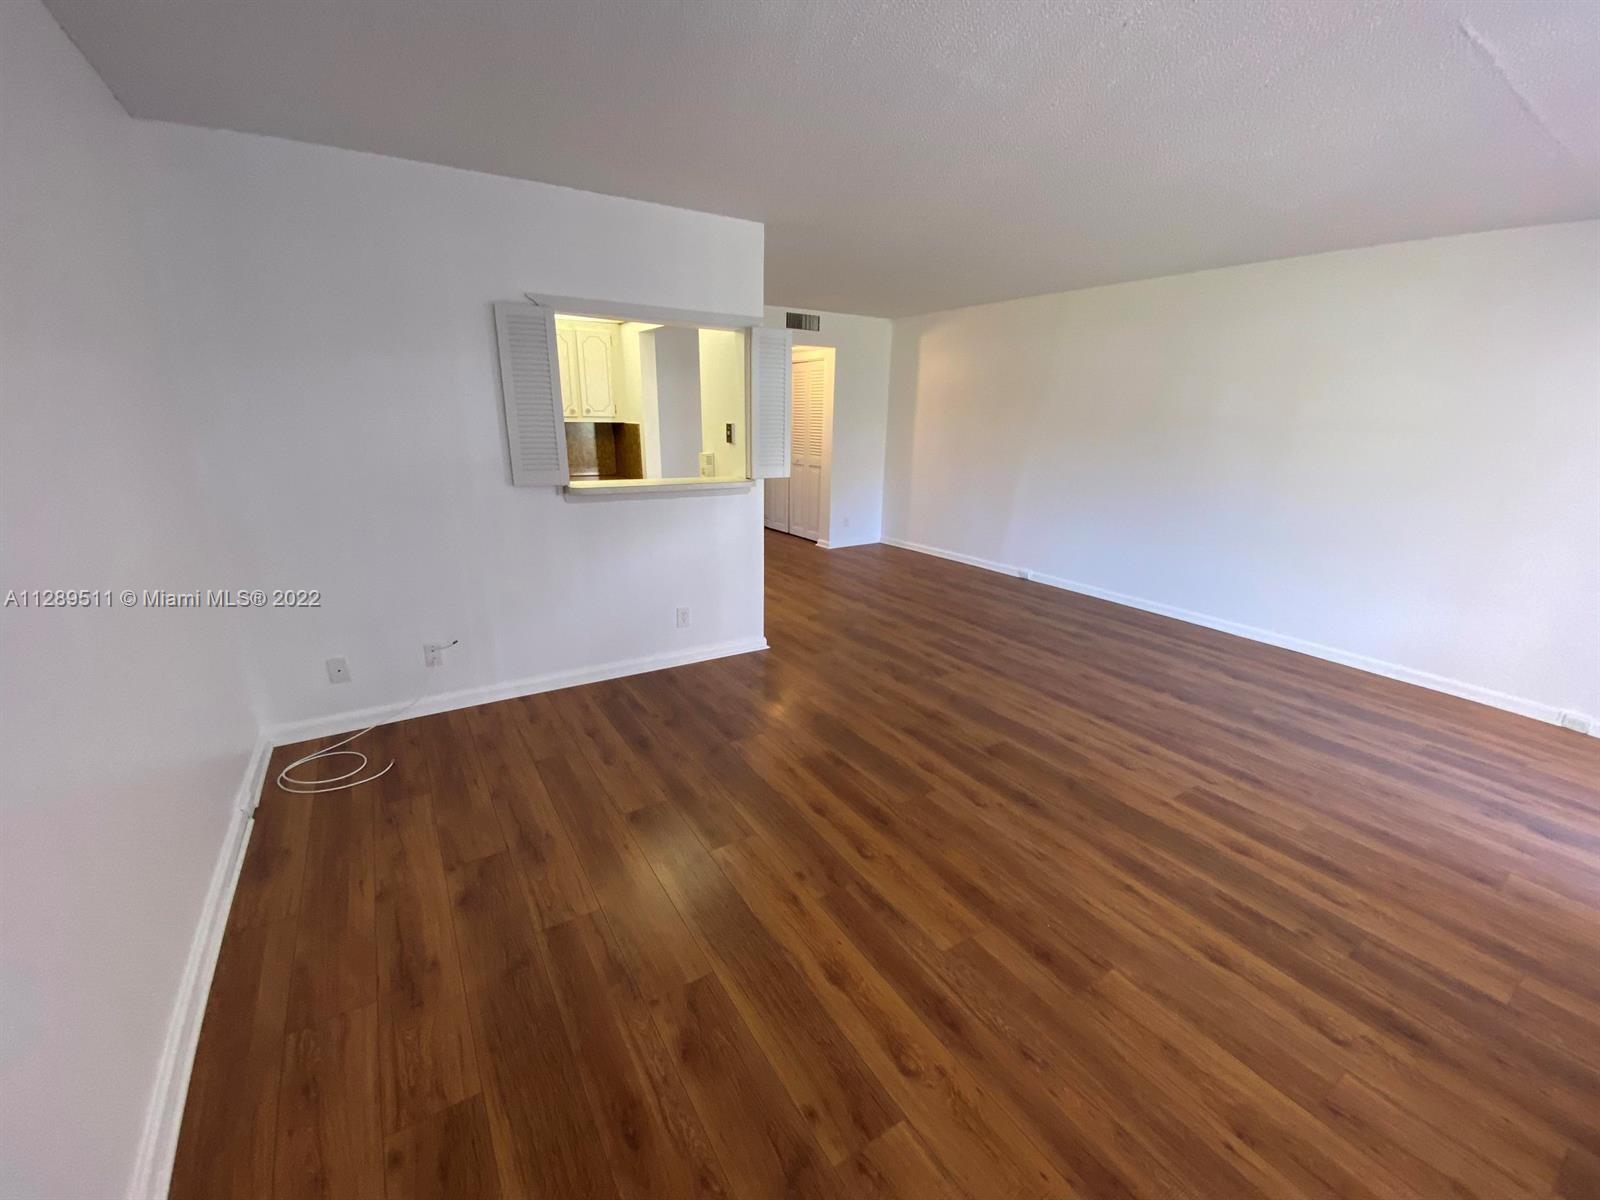 wooden floor in an empty room